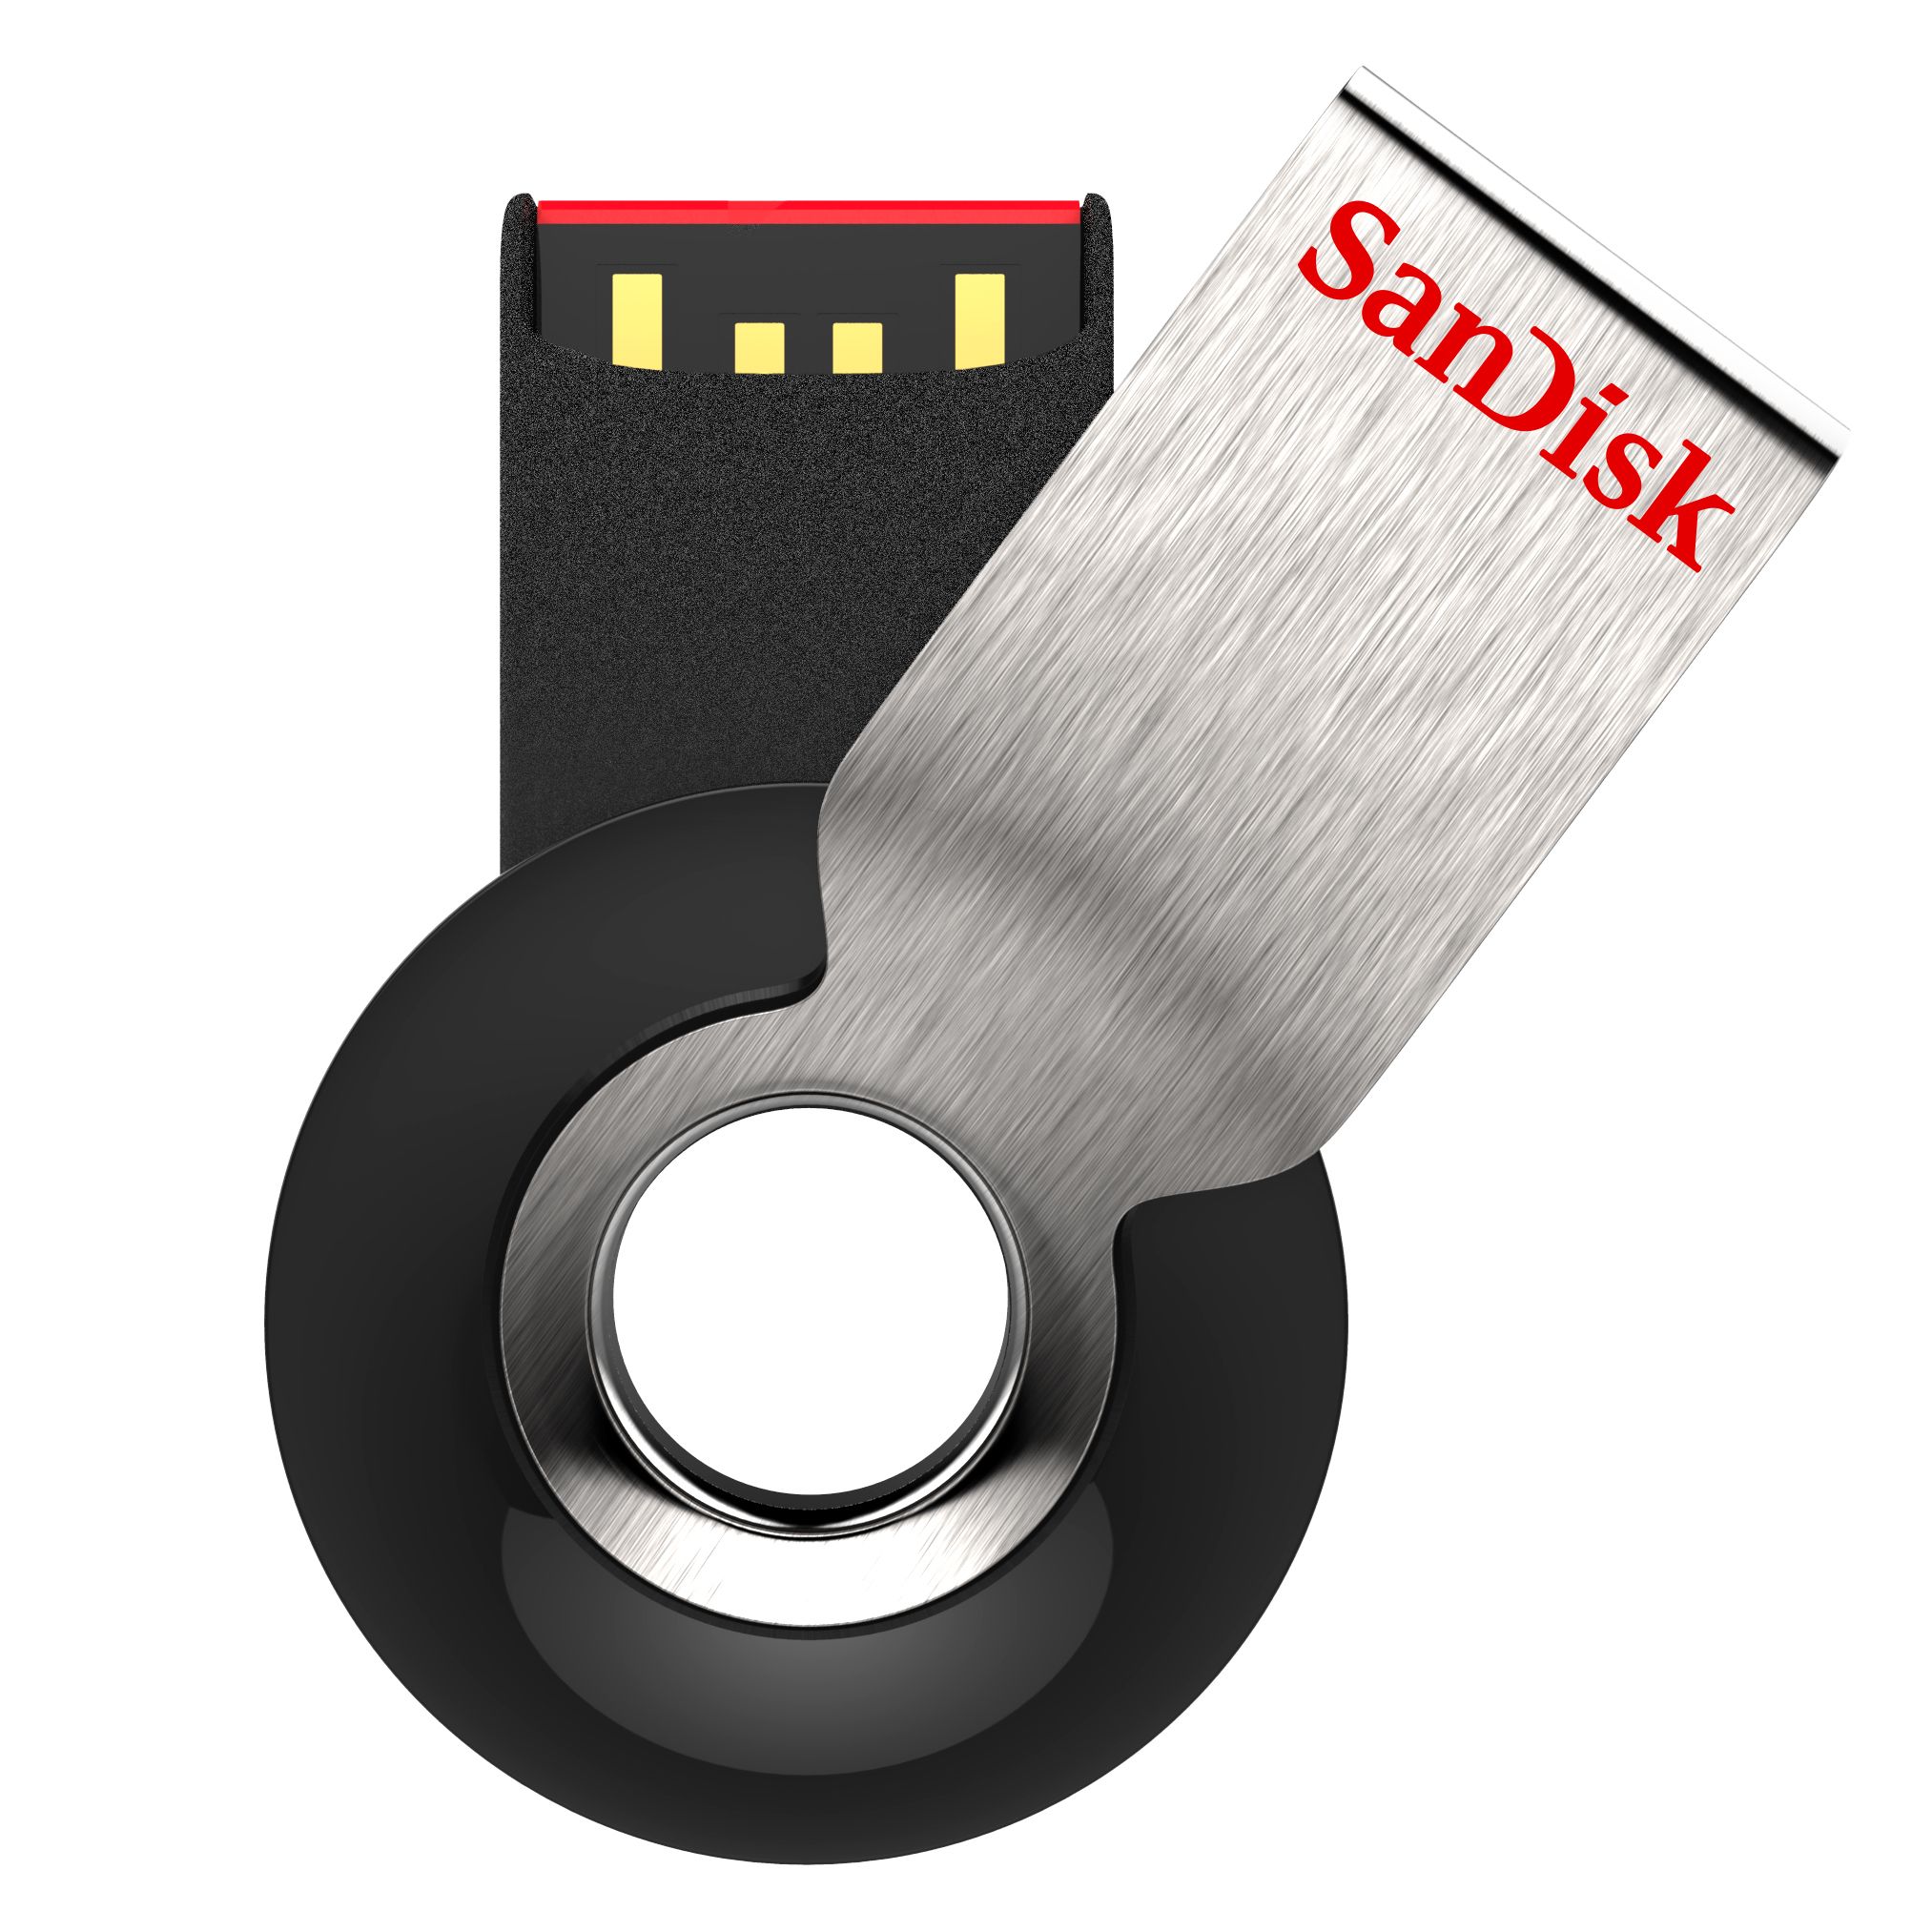 SanDisk Cruzer Orbit USB Flash Drive - 16GB